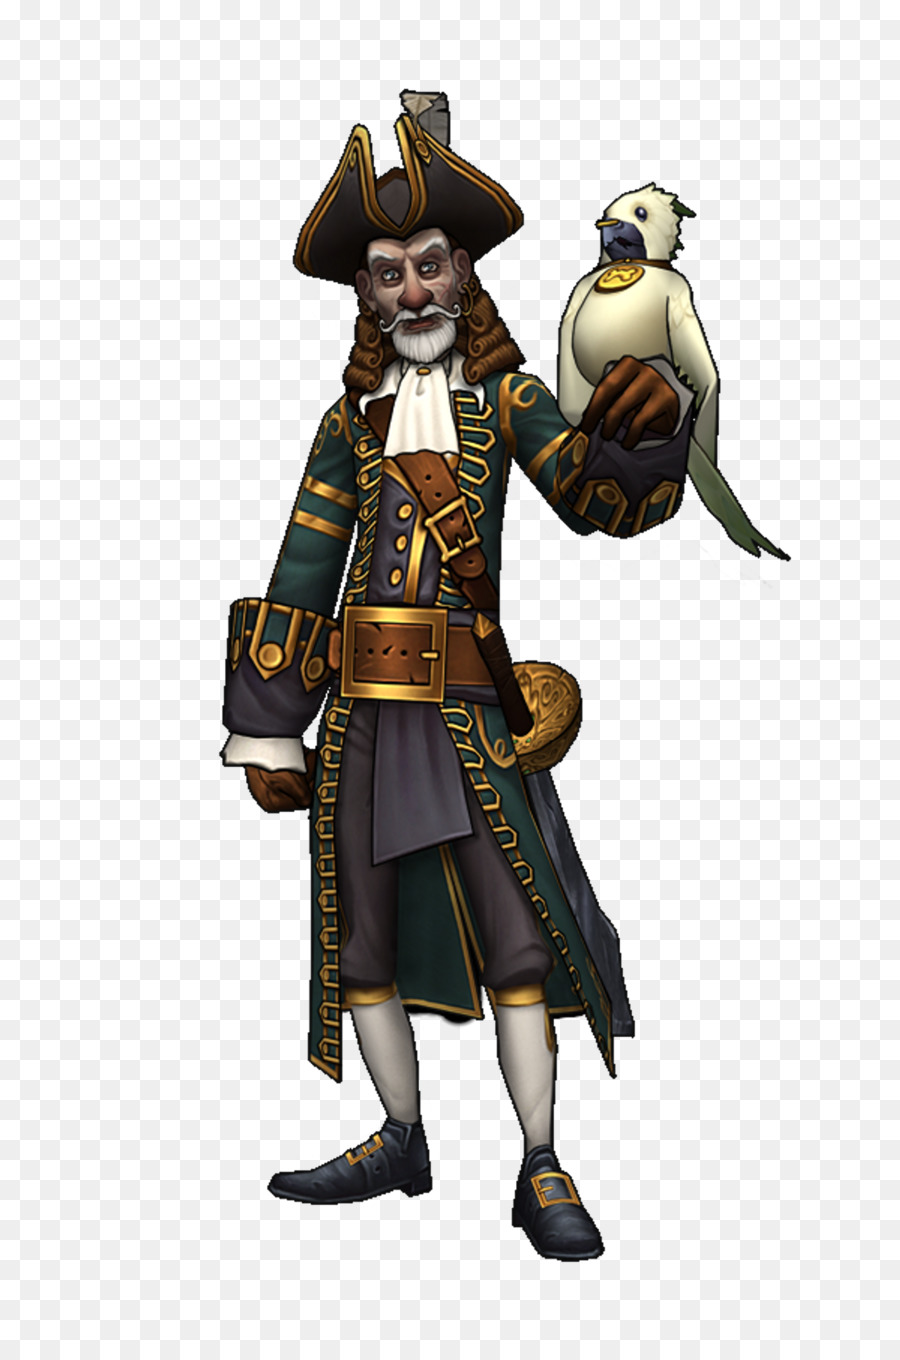 Pirate101 Wizard101 vi phạm bản quyền cộng Hòa của Cướp biển gợi - cướp biển